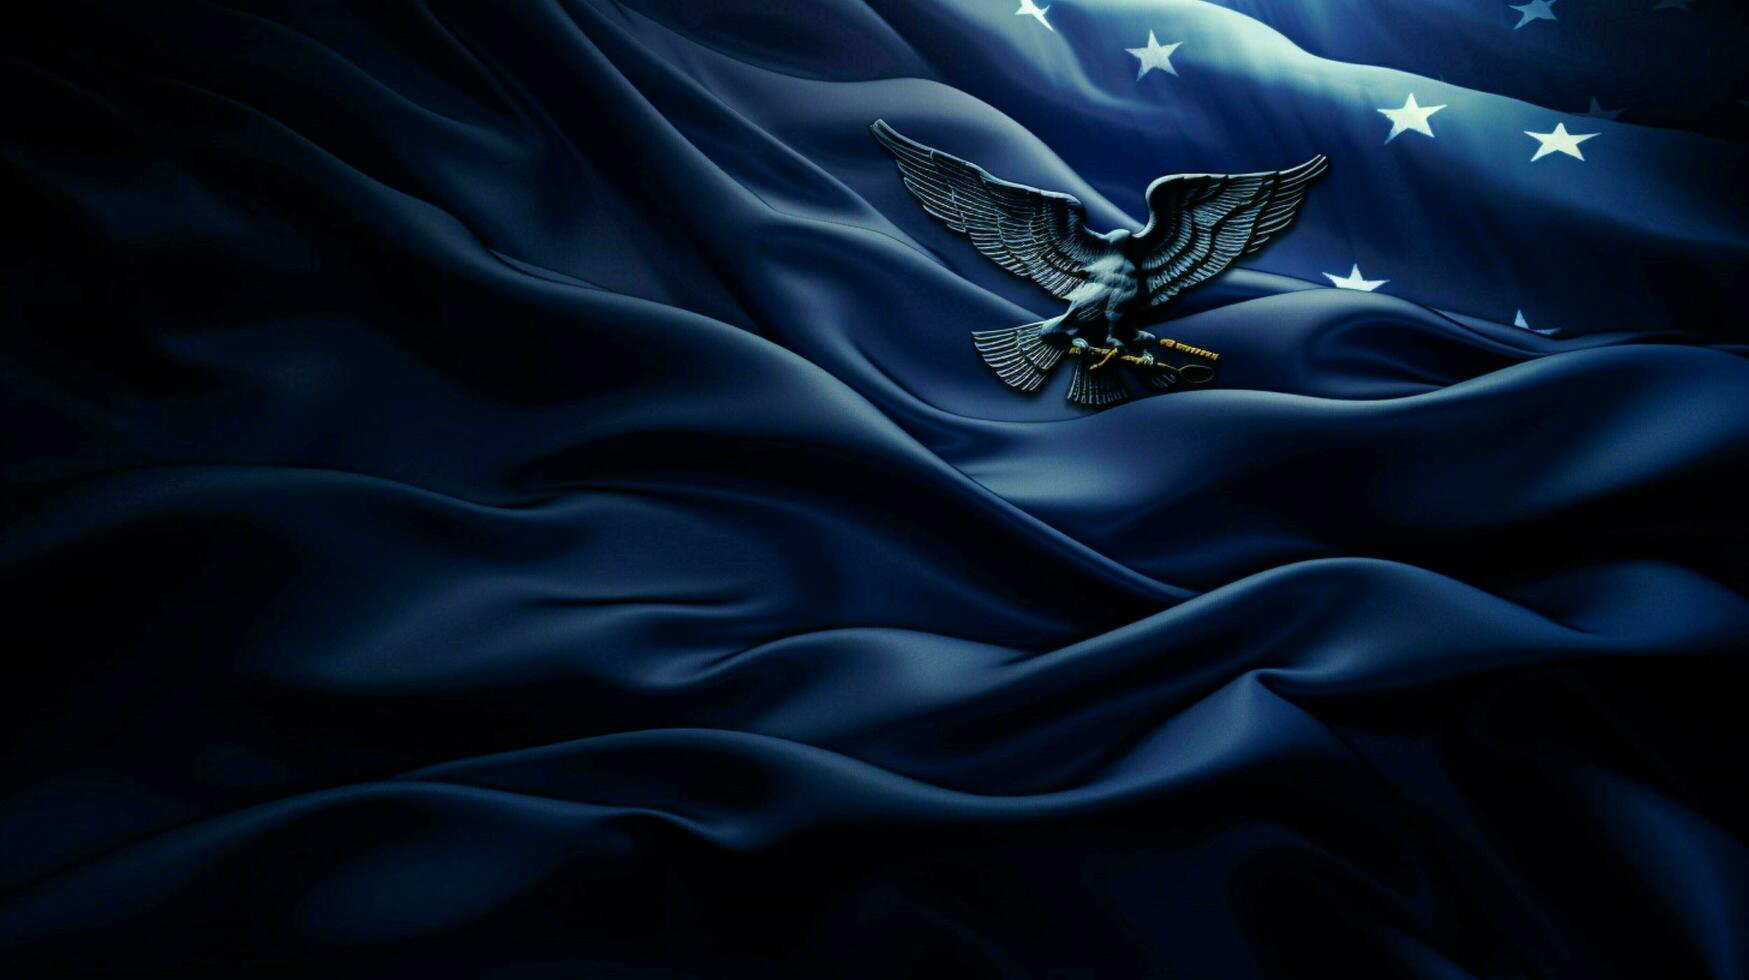 Marina Militare blu sfondo alto qualità foto